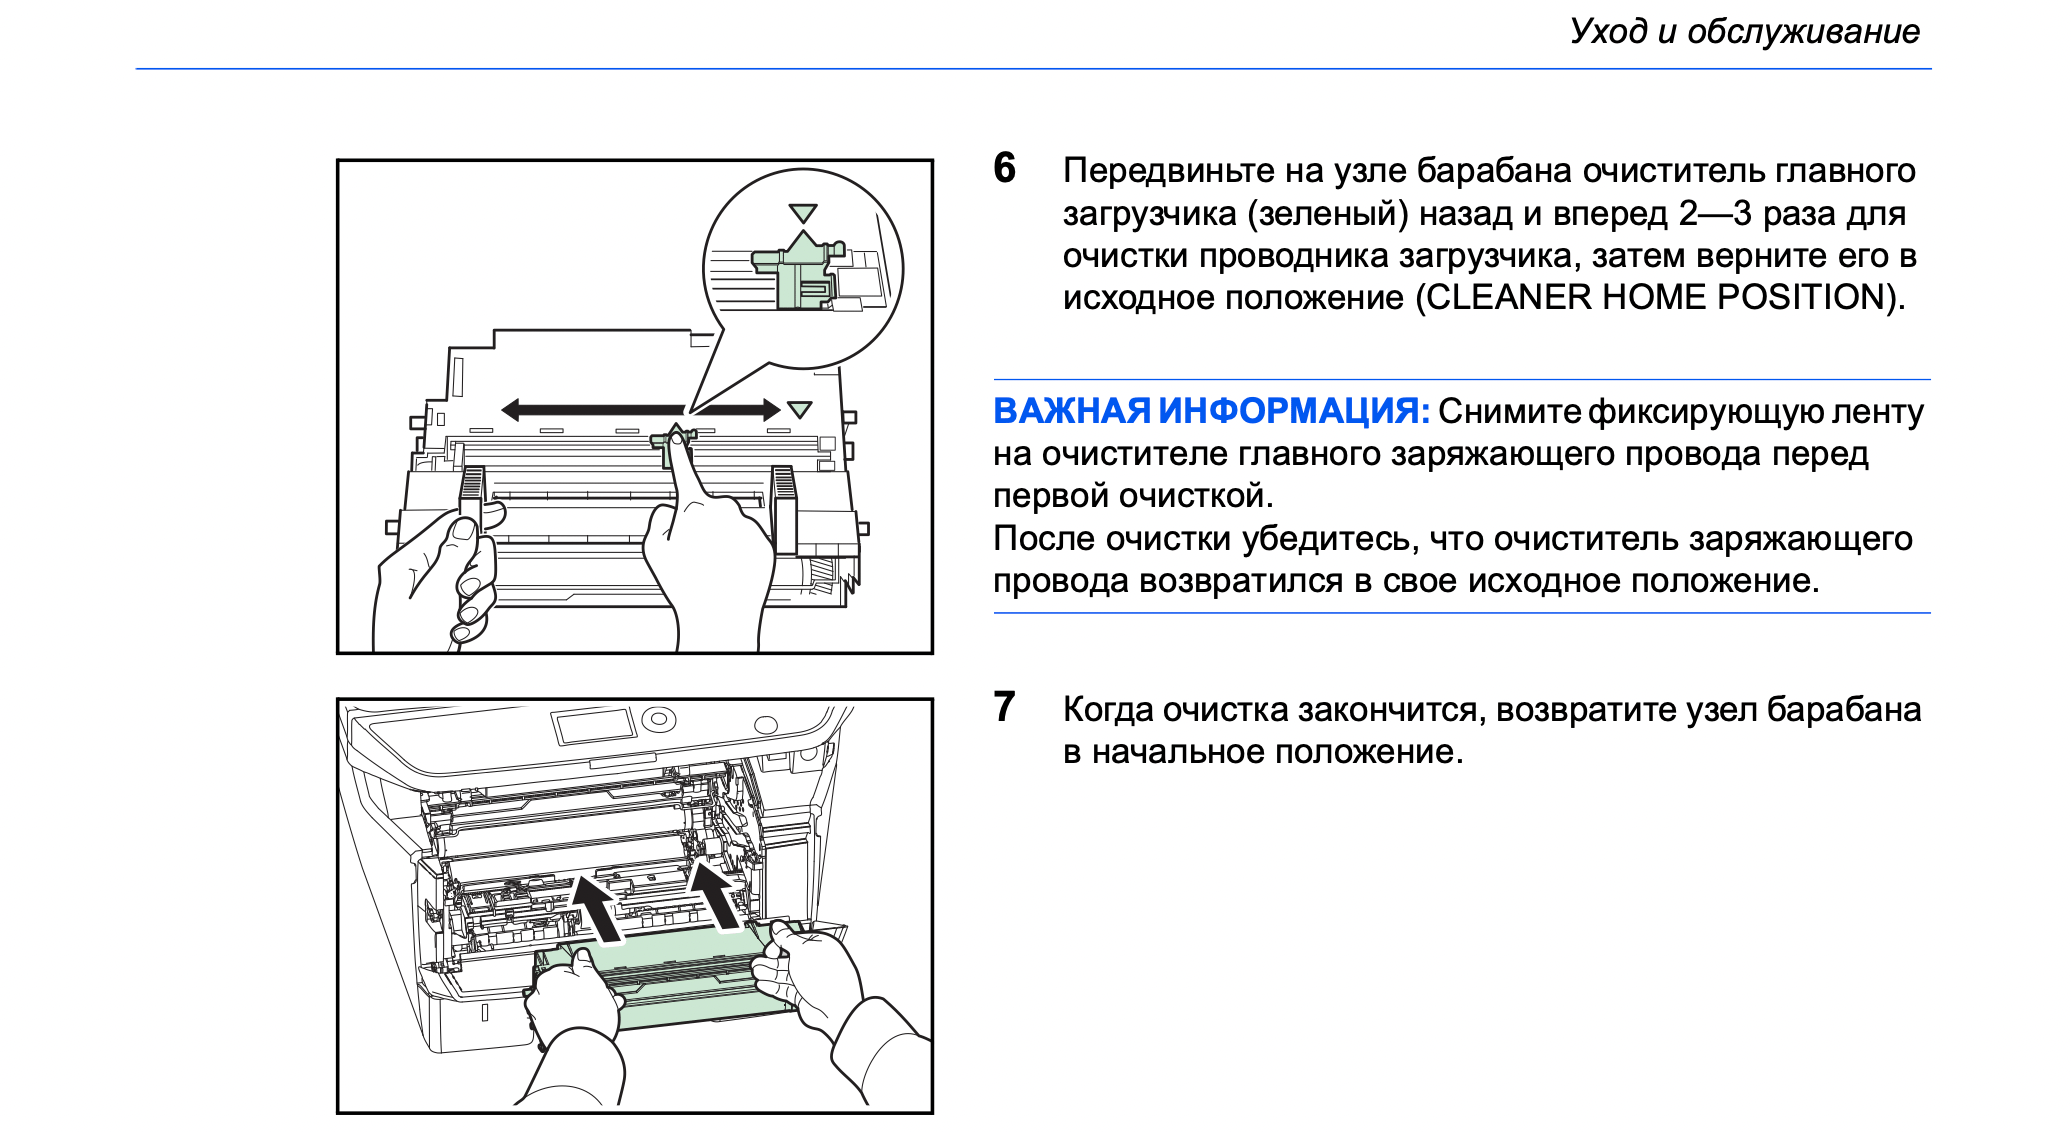 Скриншот из официальной инструкции к принтеру Kyocera M2530dn